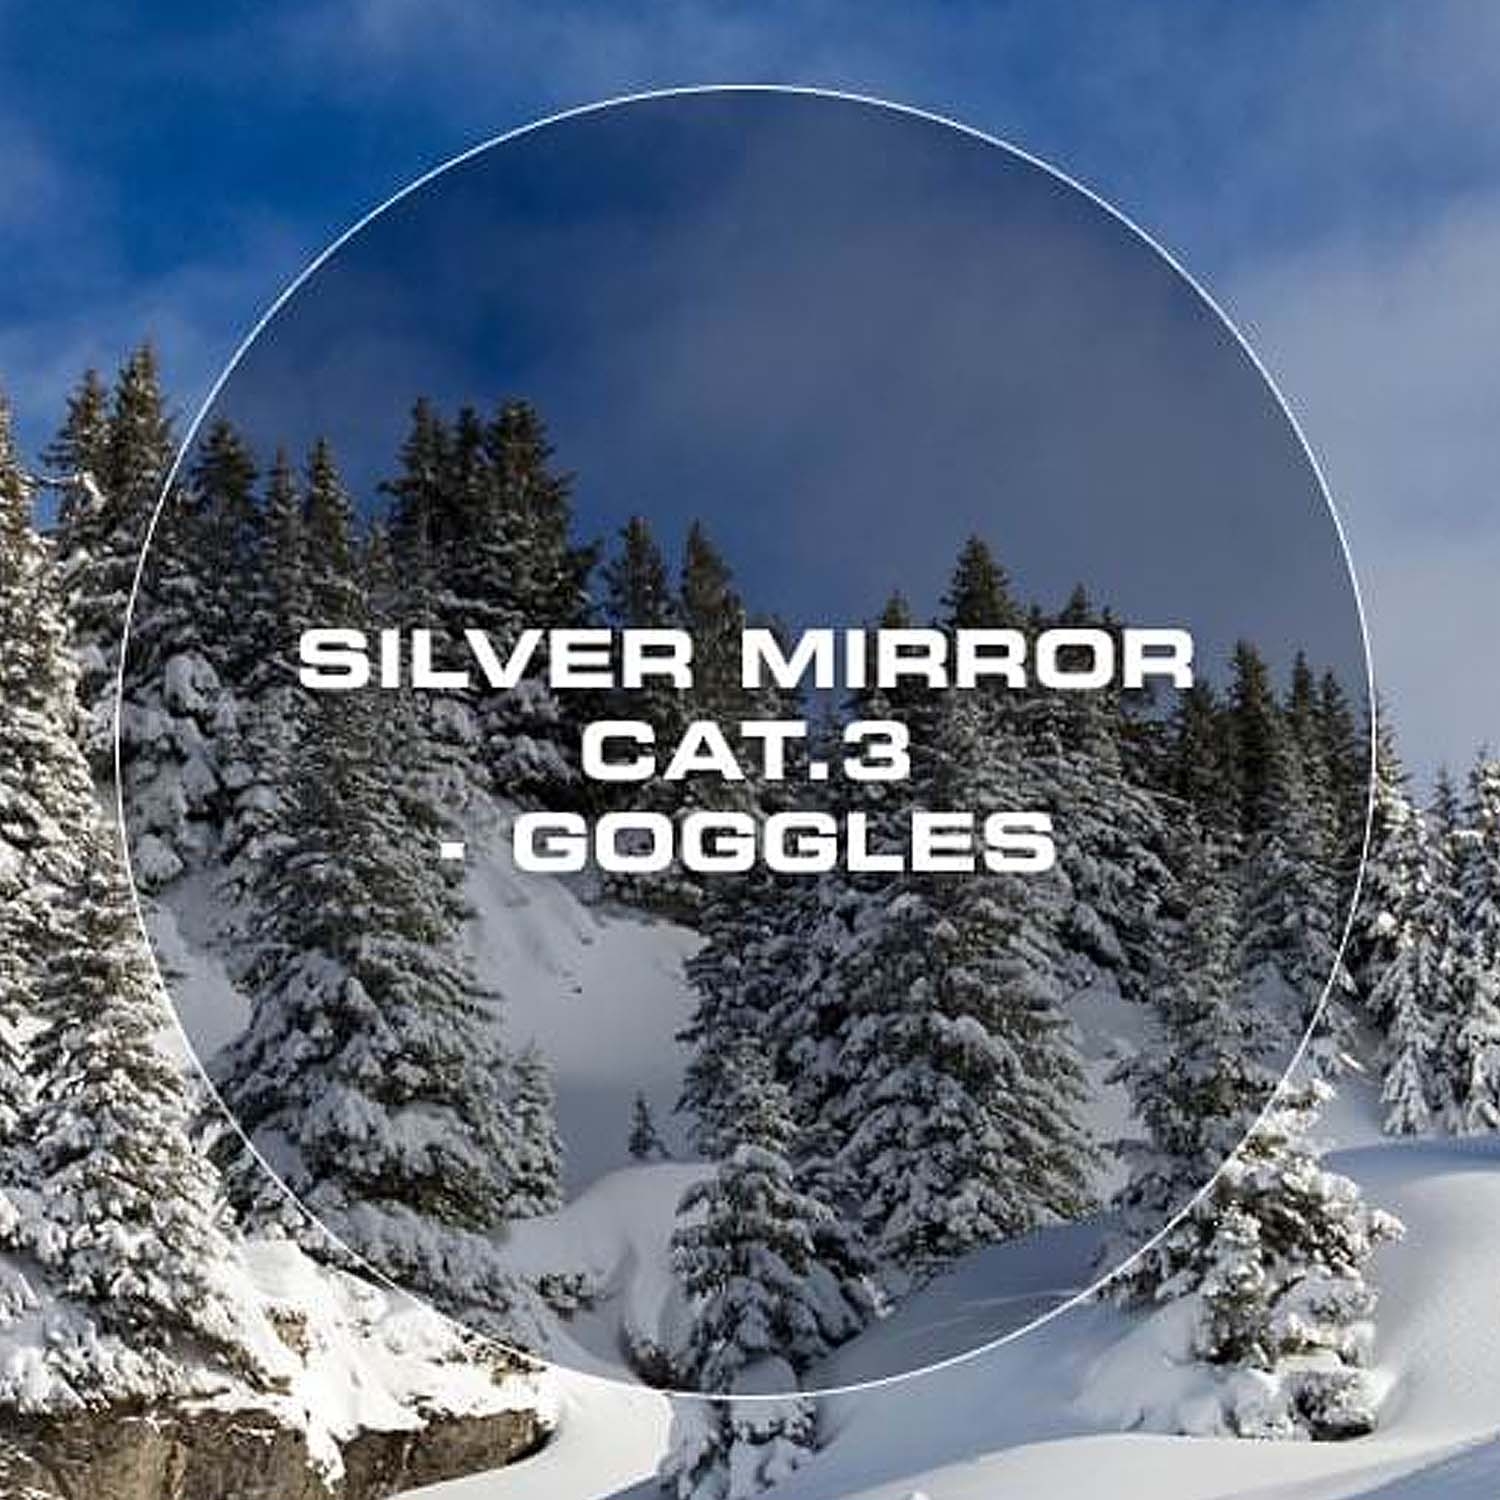 Bloc Fifty-Five Goggles Matt Black/Silver Lens 2021